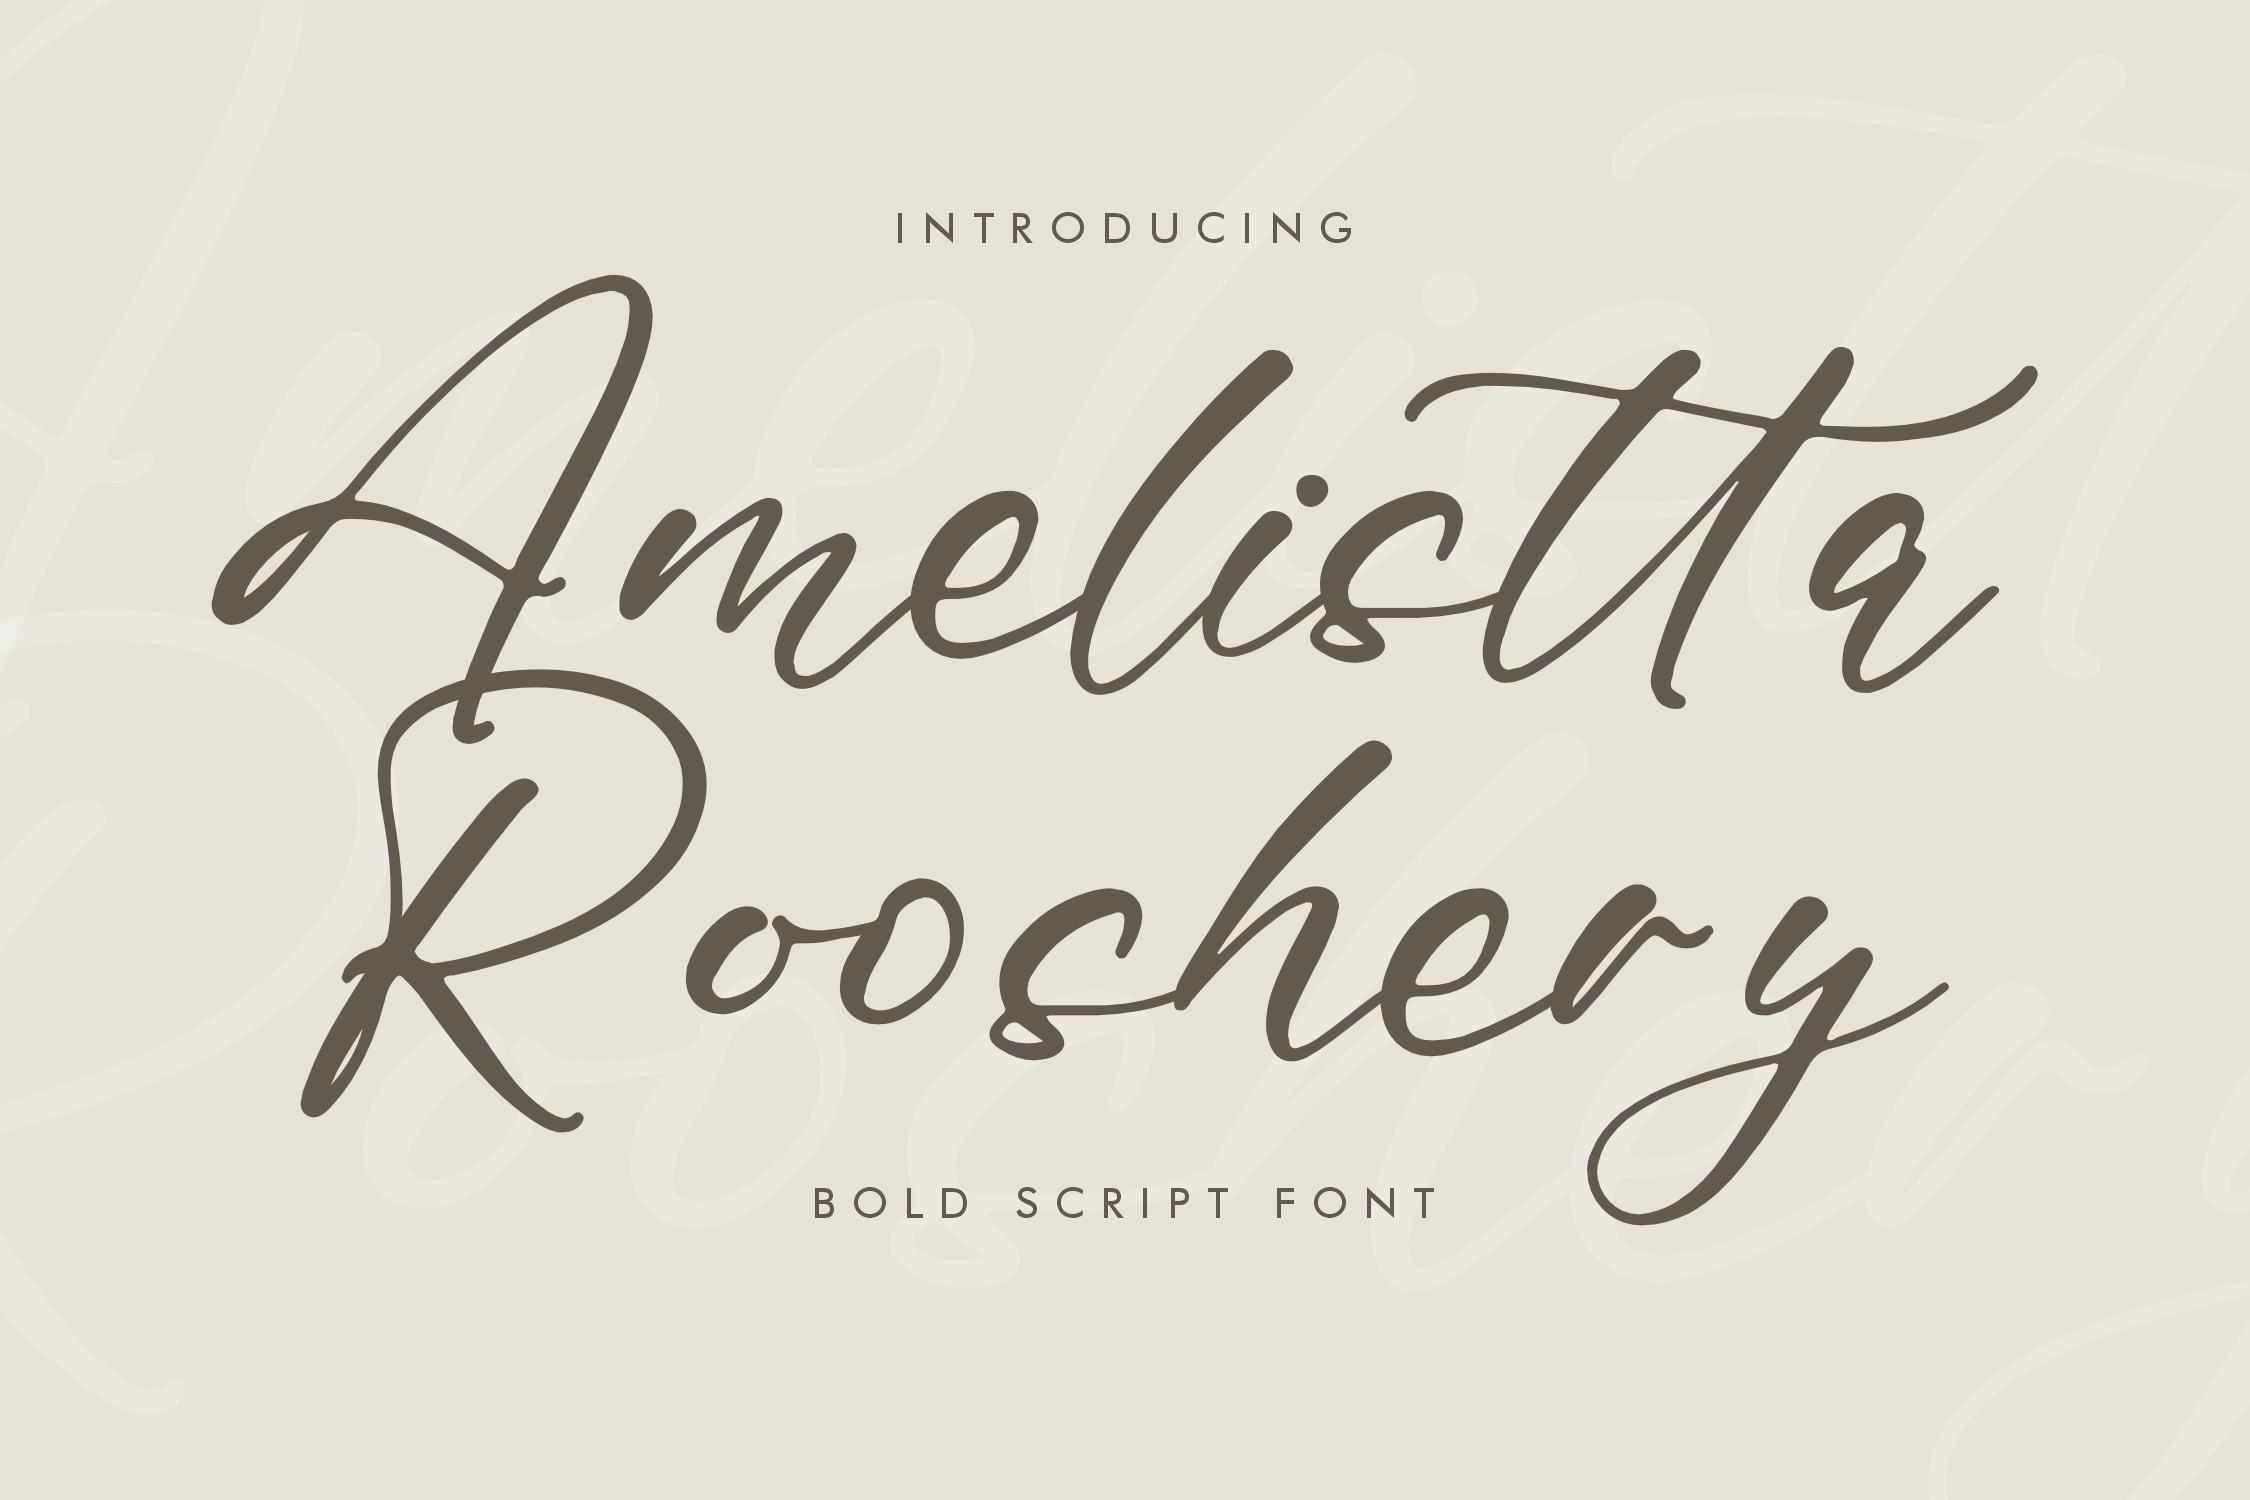 Пример шрифта Amelistta Rooshery